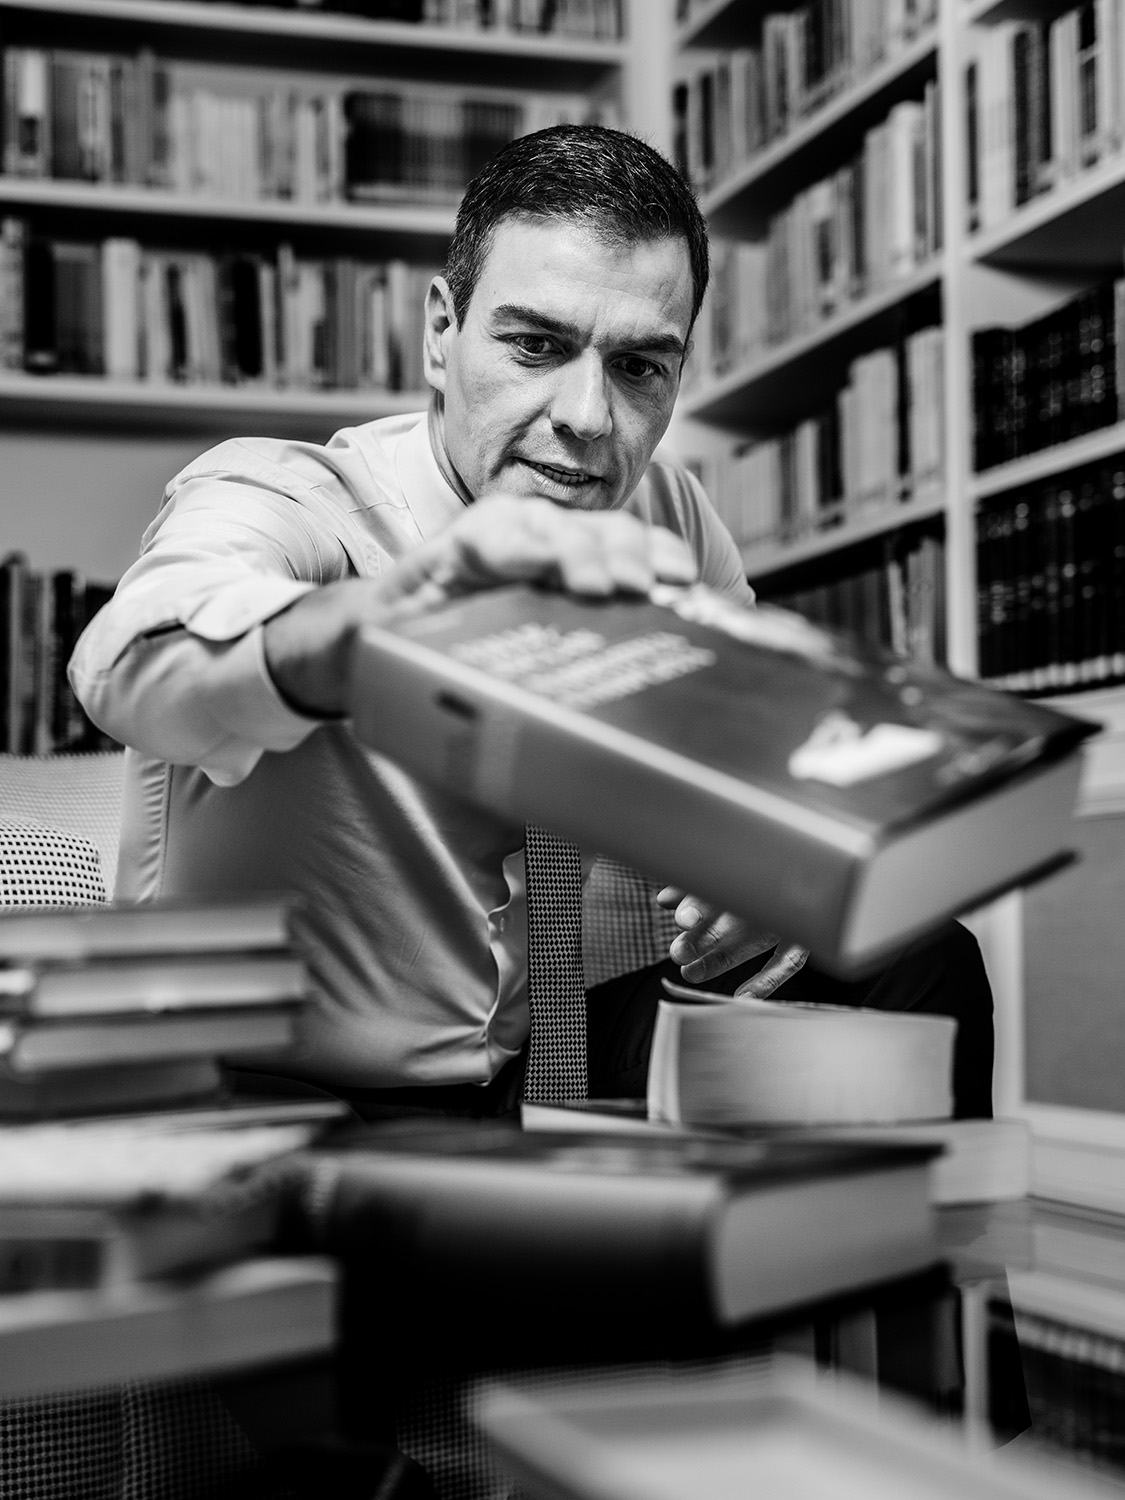 Pedro Sánchez y la biblioteca perfecta